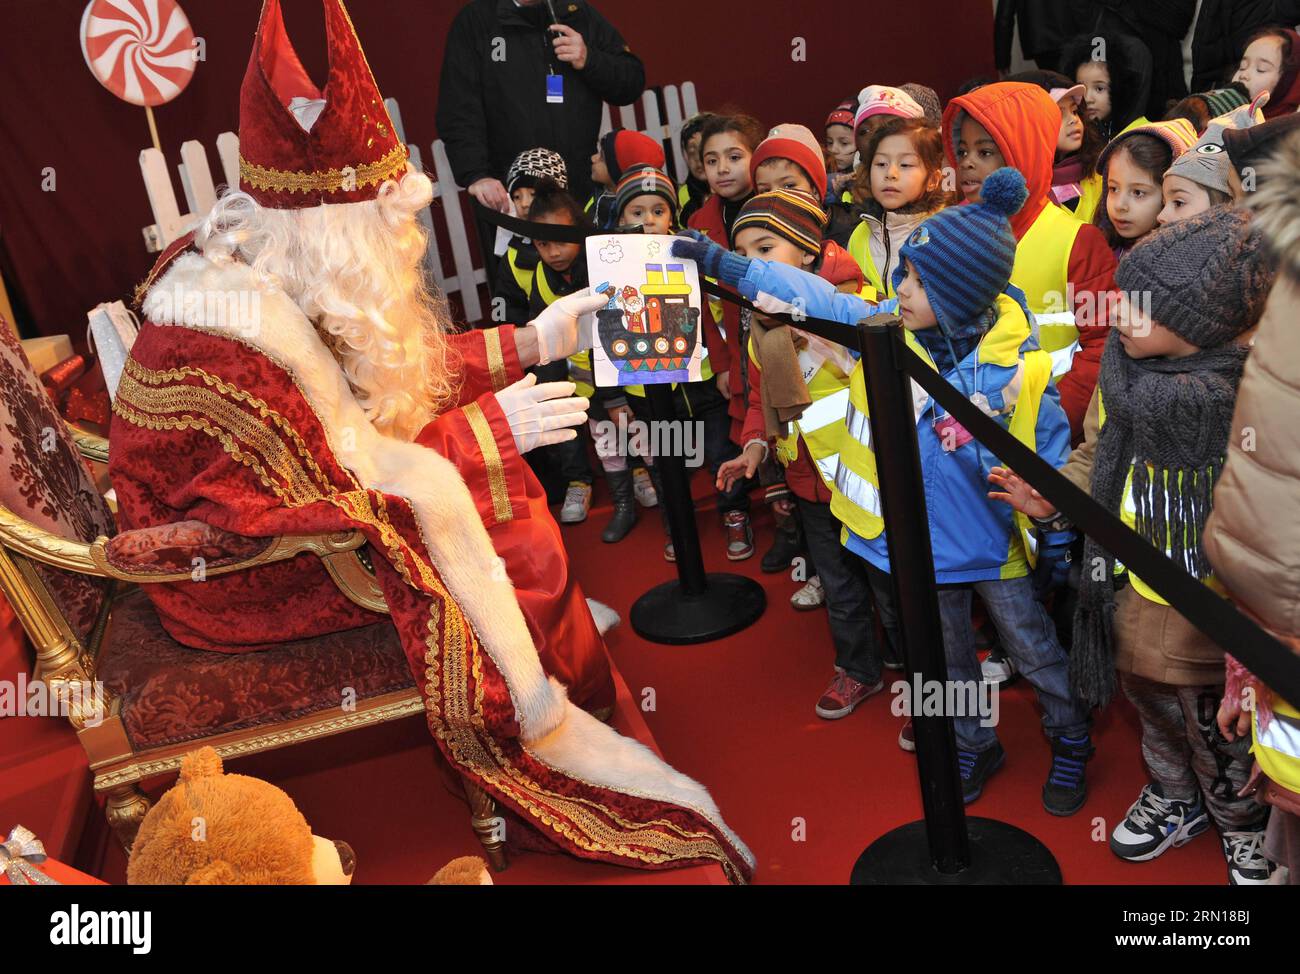 (141205) -- BRÜSSEL, 5. Dezember 2014 -- Kinder grüßen Saint-Nicolas (Sinterklaas) in Brüssel, 5. Dezember 2014. Saint-Nicolas, der eine der Quellen der beliebten Weihnachtsfigur des Weihnachtsmanns ist, wird jährlich mit Geschenken in der Nacht vor oder am Heiligen Nikolaus-Tag am 6. Dezember in Belgien gefeiert. ) BELGIEN-BRÜSSEL-SAINT NICOLAS YexPingfan PUBLICATIONxNOTxINxCHN Brüssel DEZ 5 2014 Kinder grüßen Saint Nicolas in Brüssel DEZ 5 2014 Saint Nicolas, einer der Quellen der beliebten Weihnachtsfigur des Santa Claus, WIRD jährlich mit Th gefeiert Stockfoto